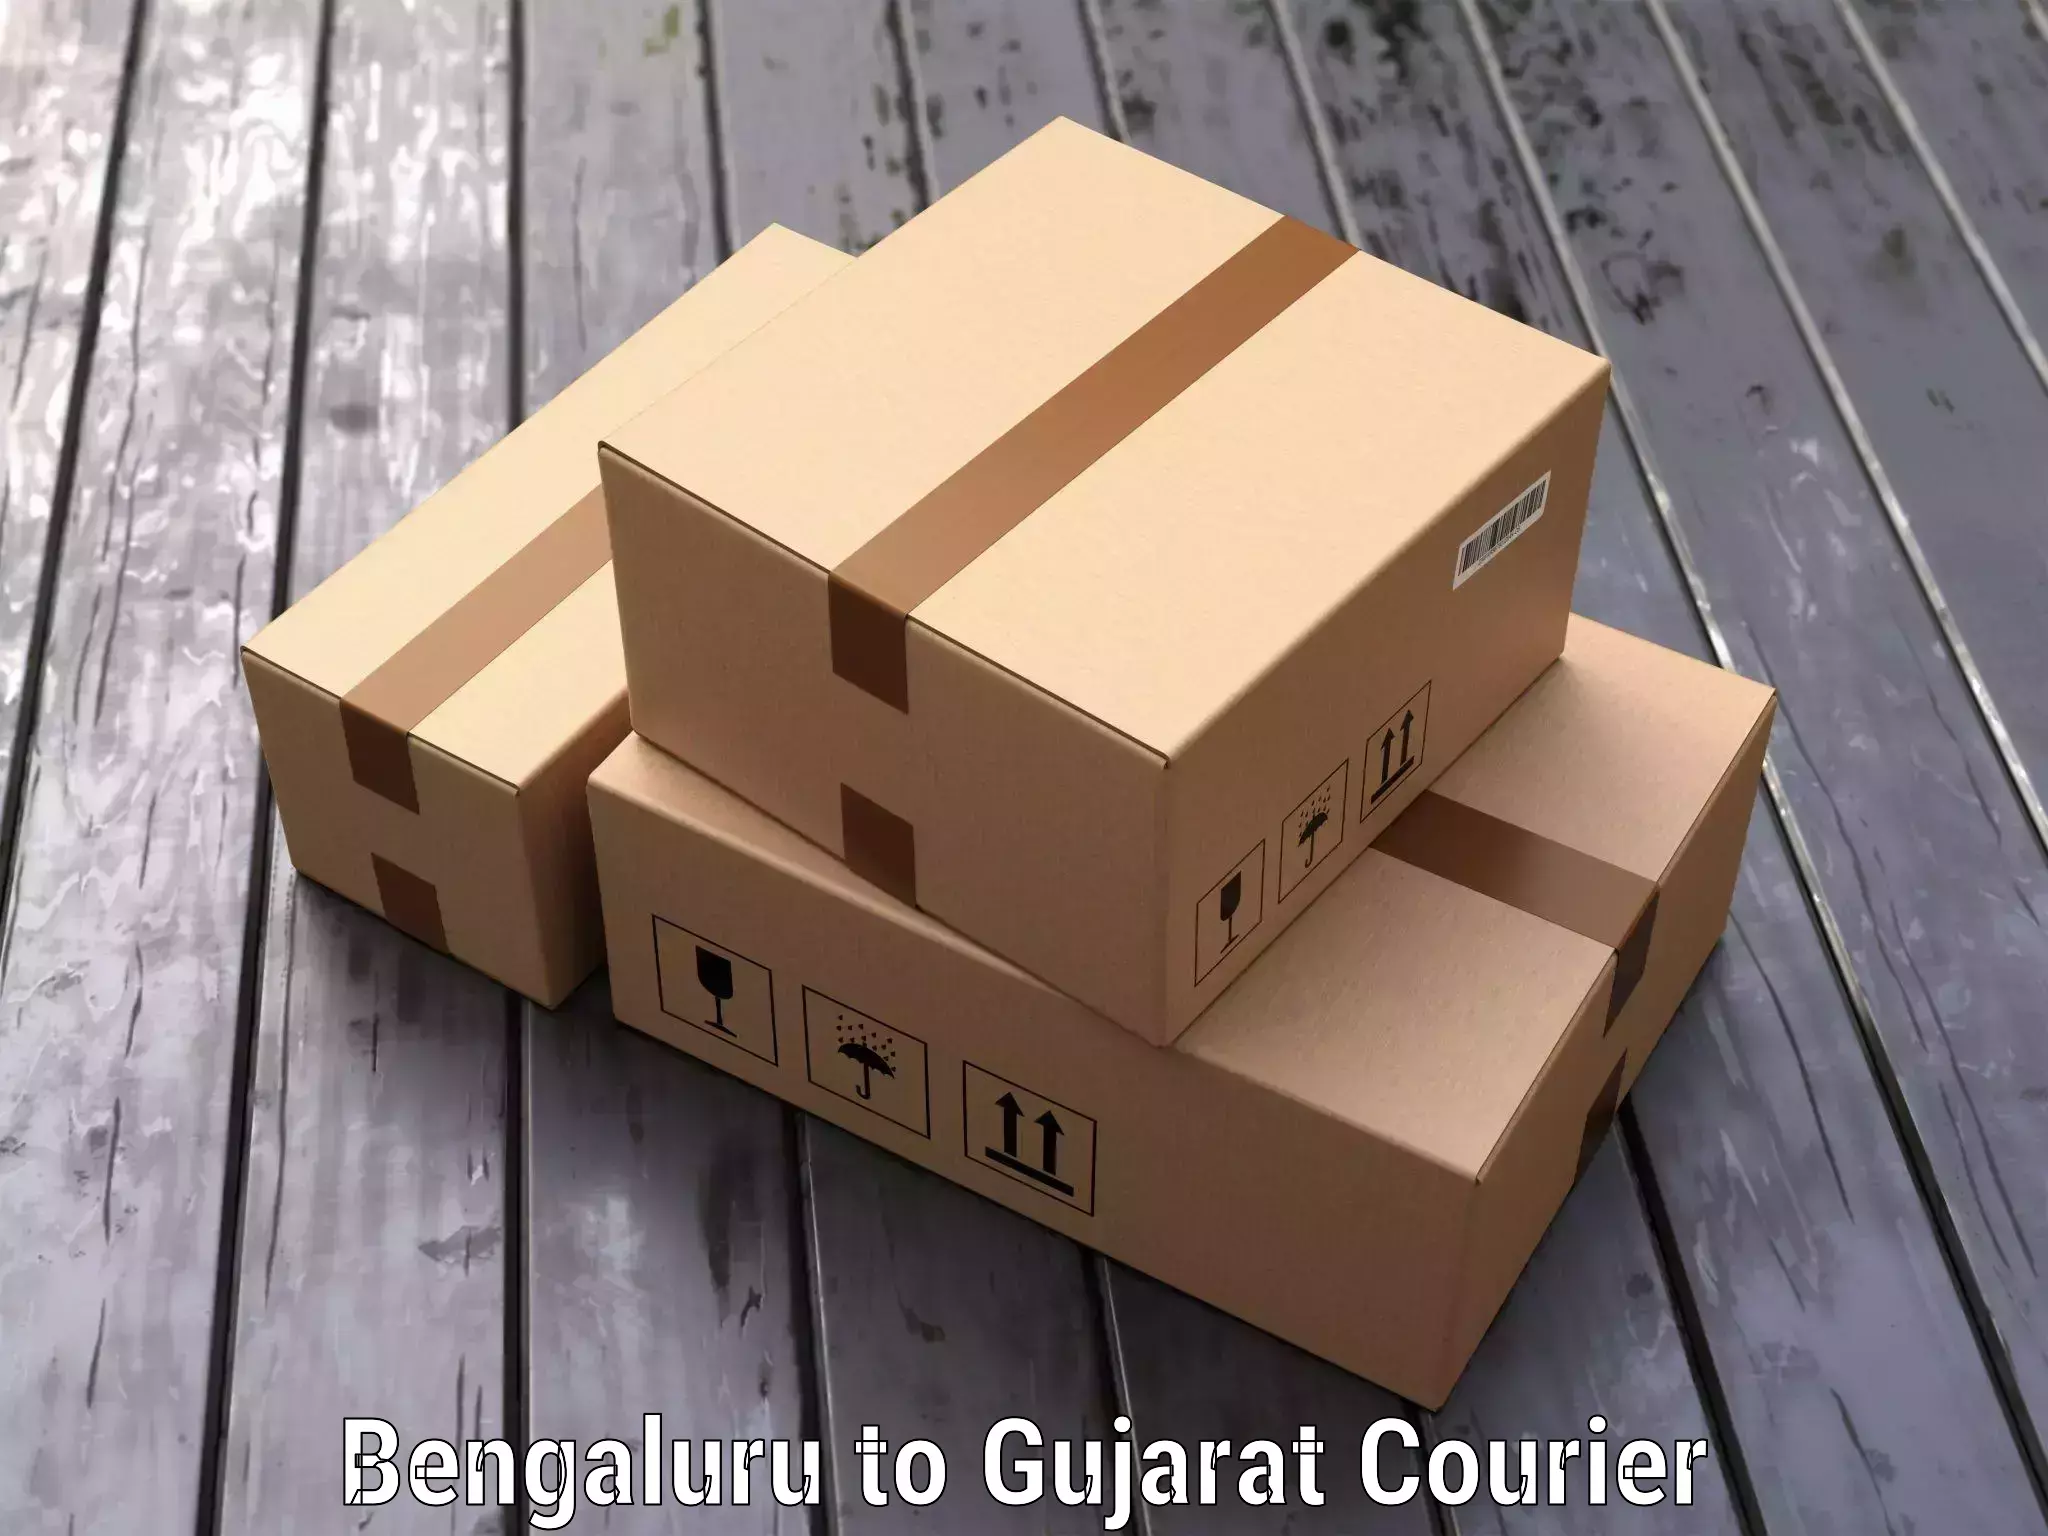 Door-to-door baggage service Bengaluru to Gujarat